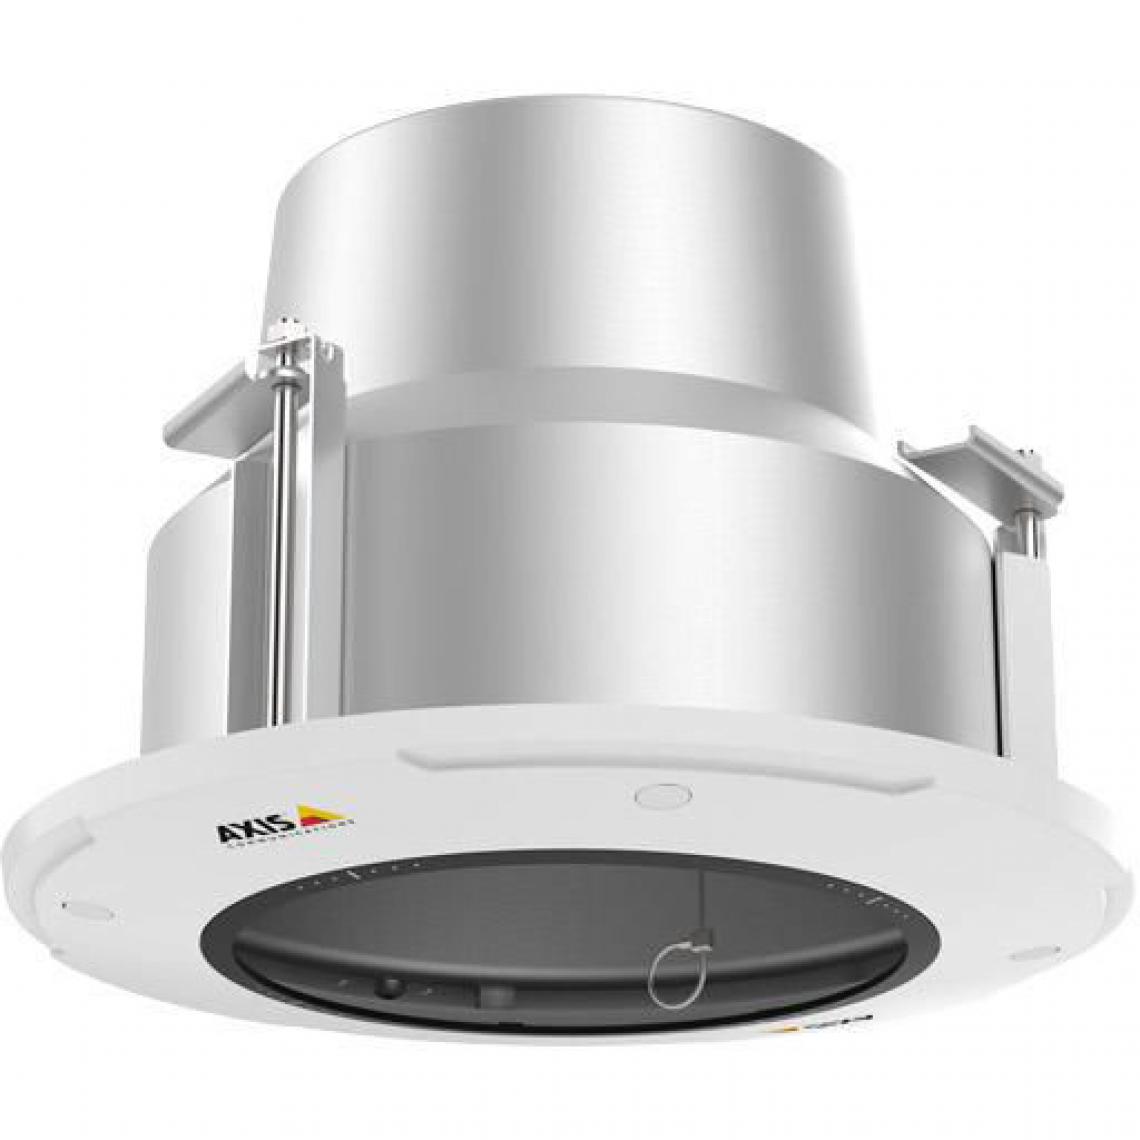 Axis - AXIS - Dôme de caméra - montage encastré - usage interne - pour AXIS P5624-E, P5635-E, P5635-E 50Hz - Bracelet connecté